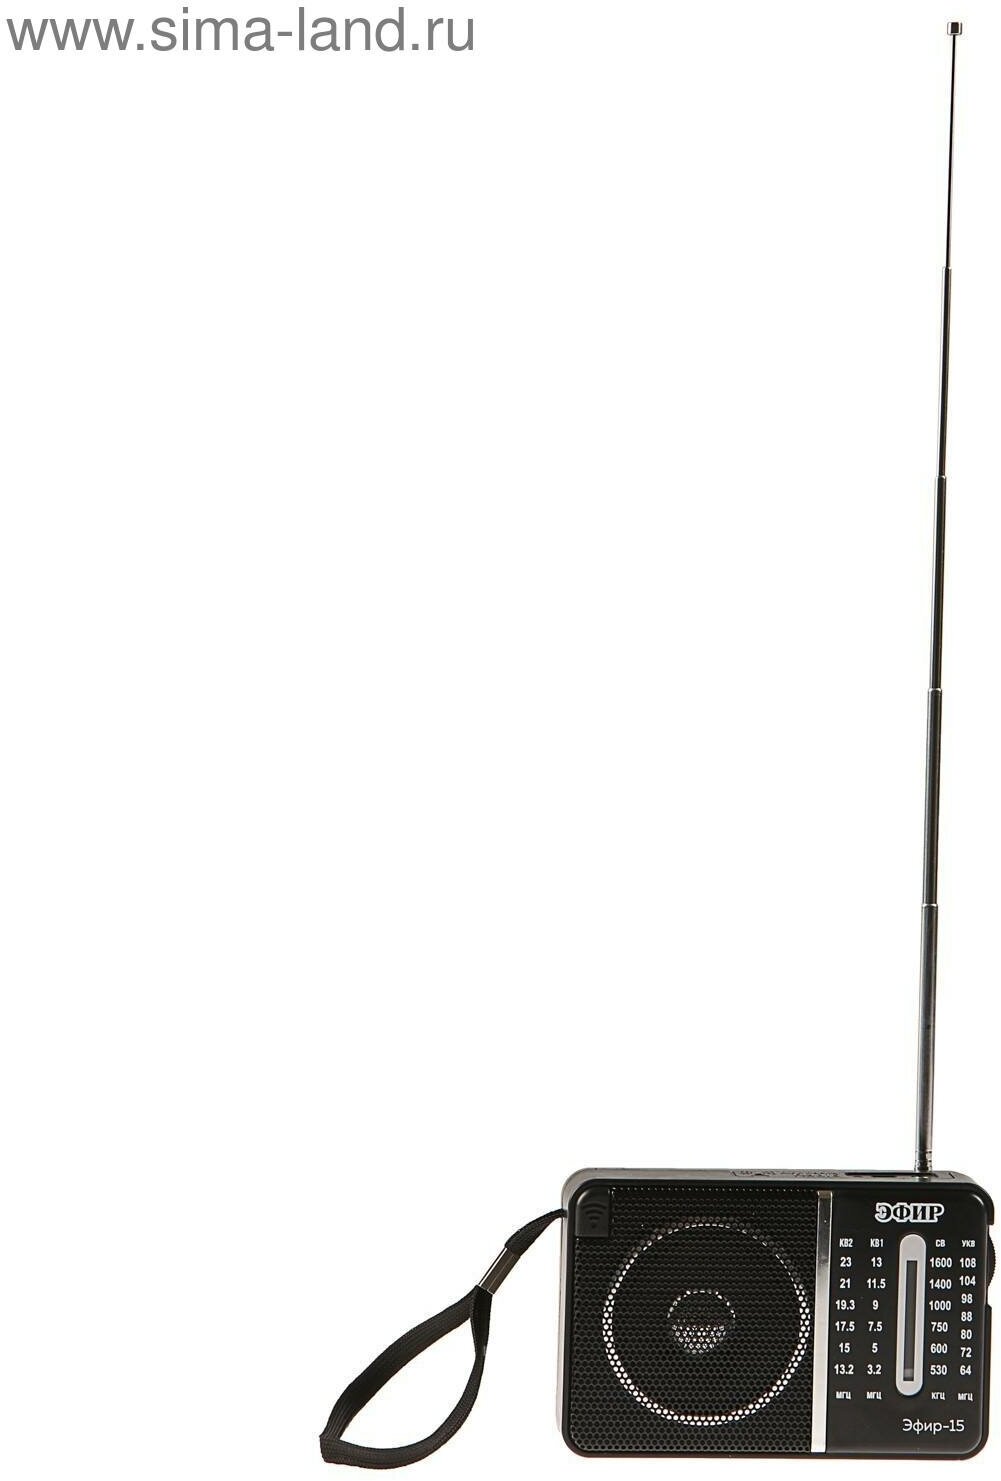 Радиоприемник "-15", УКВ 64-108 МГц, СВ 530-1600 КГц, КВ1, КВ2